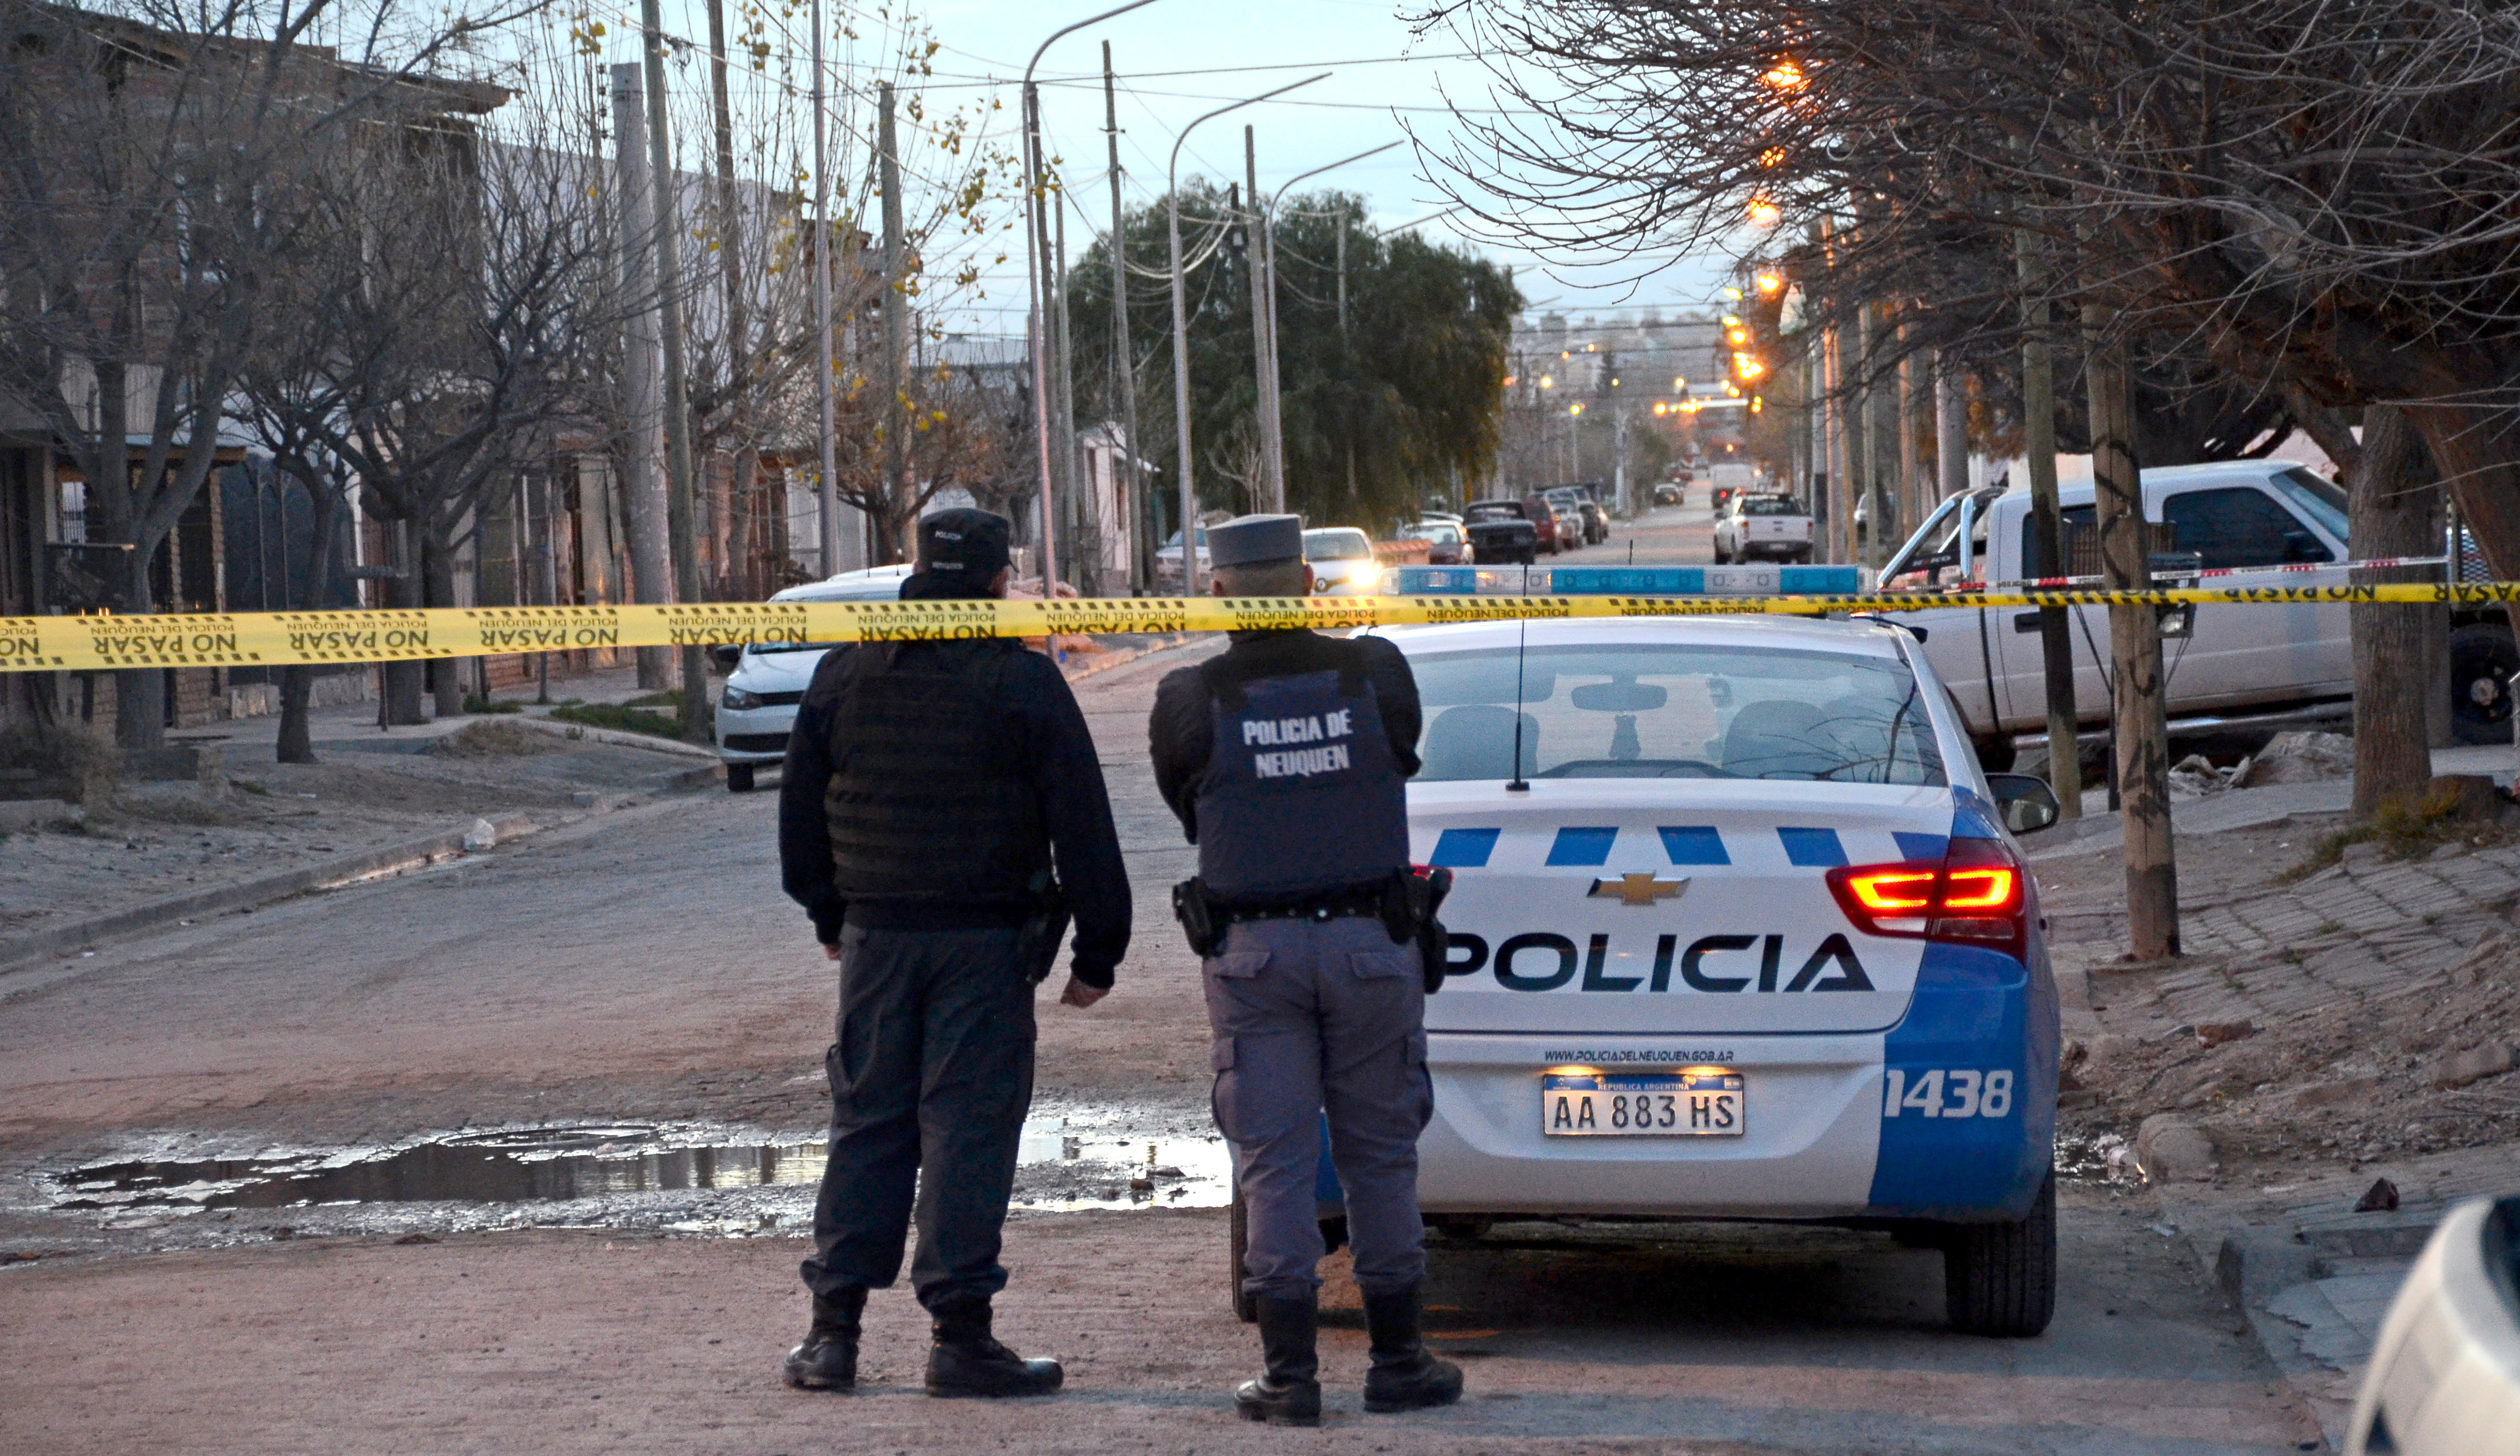 Un hombre murió de un disparo en la cabeza. Ocurrió en la madrugada en el barrio San Lorenzo de Neuquén. (Foto: Archivo.-)